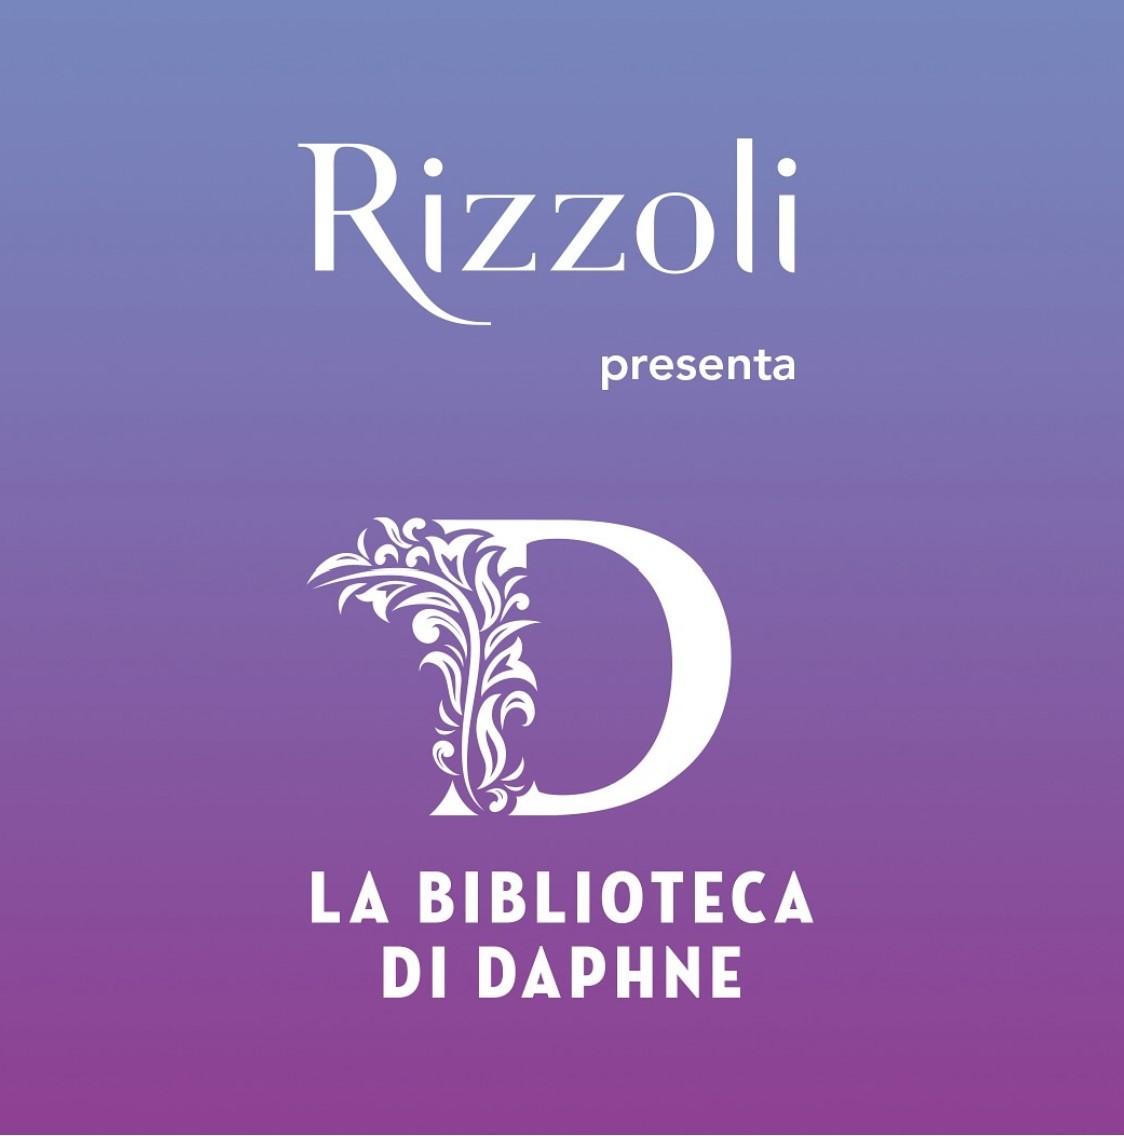 Editoria: Rizzoli affida una collana alla bootoker Magi Bulla (La Biblioteca di Daphne)